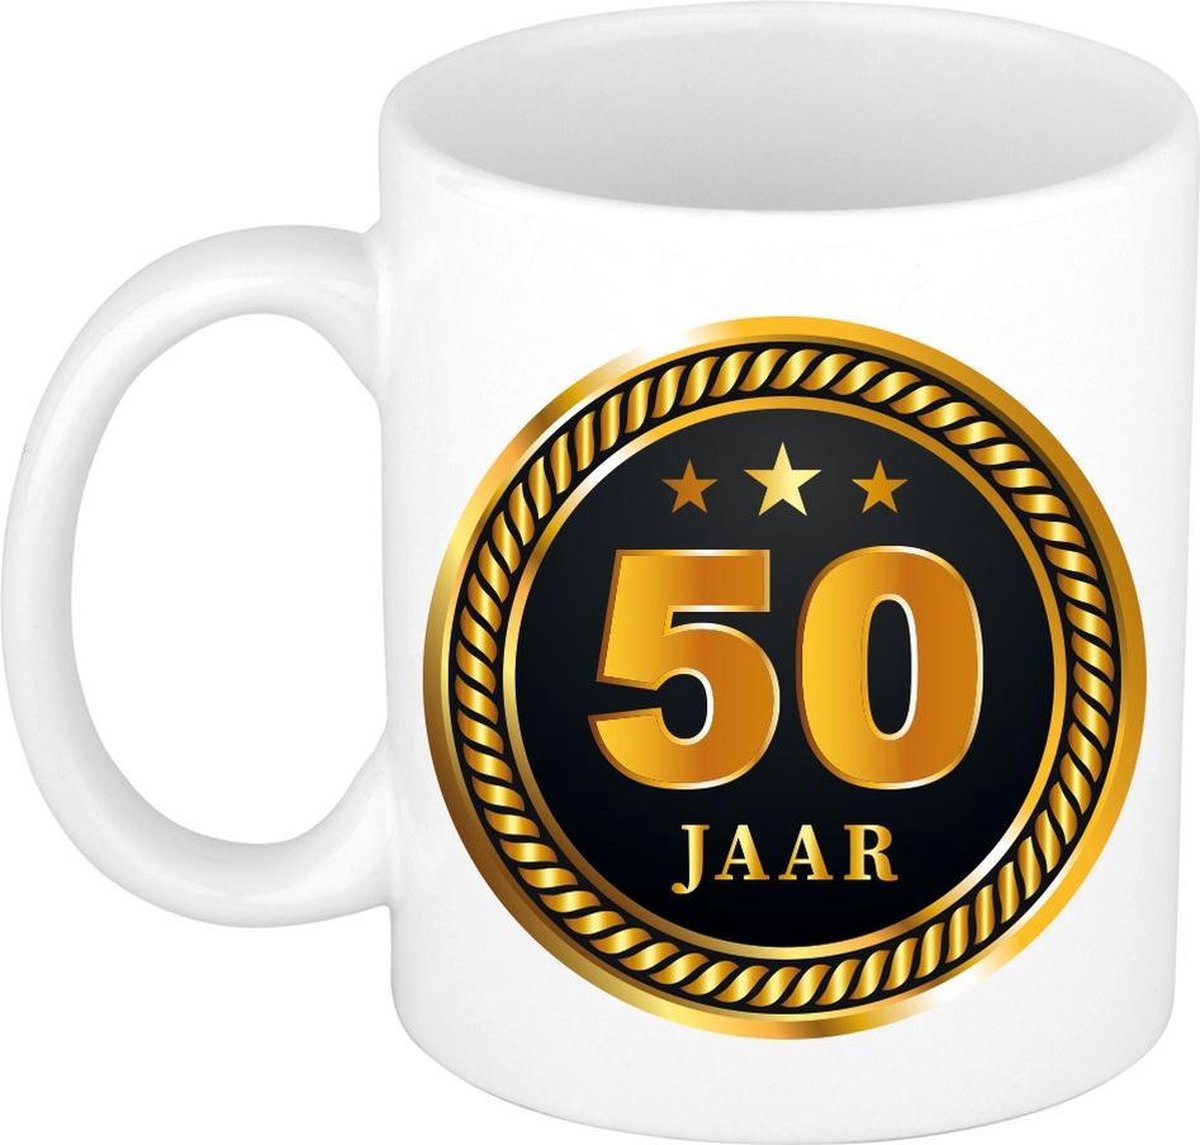 50 jaar jubileum/getrouwd/verjaardag mok medaille/ embleem zwart goud - Cadeau beker verjaardag, jubileum, 50 jaar in dienst